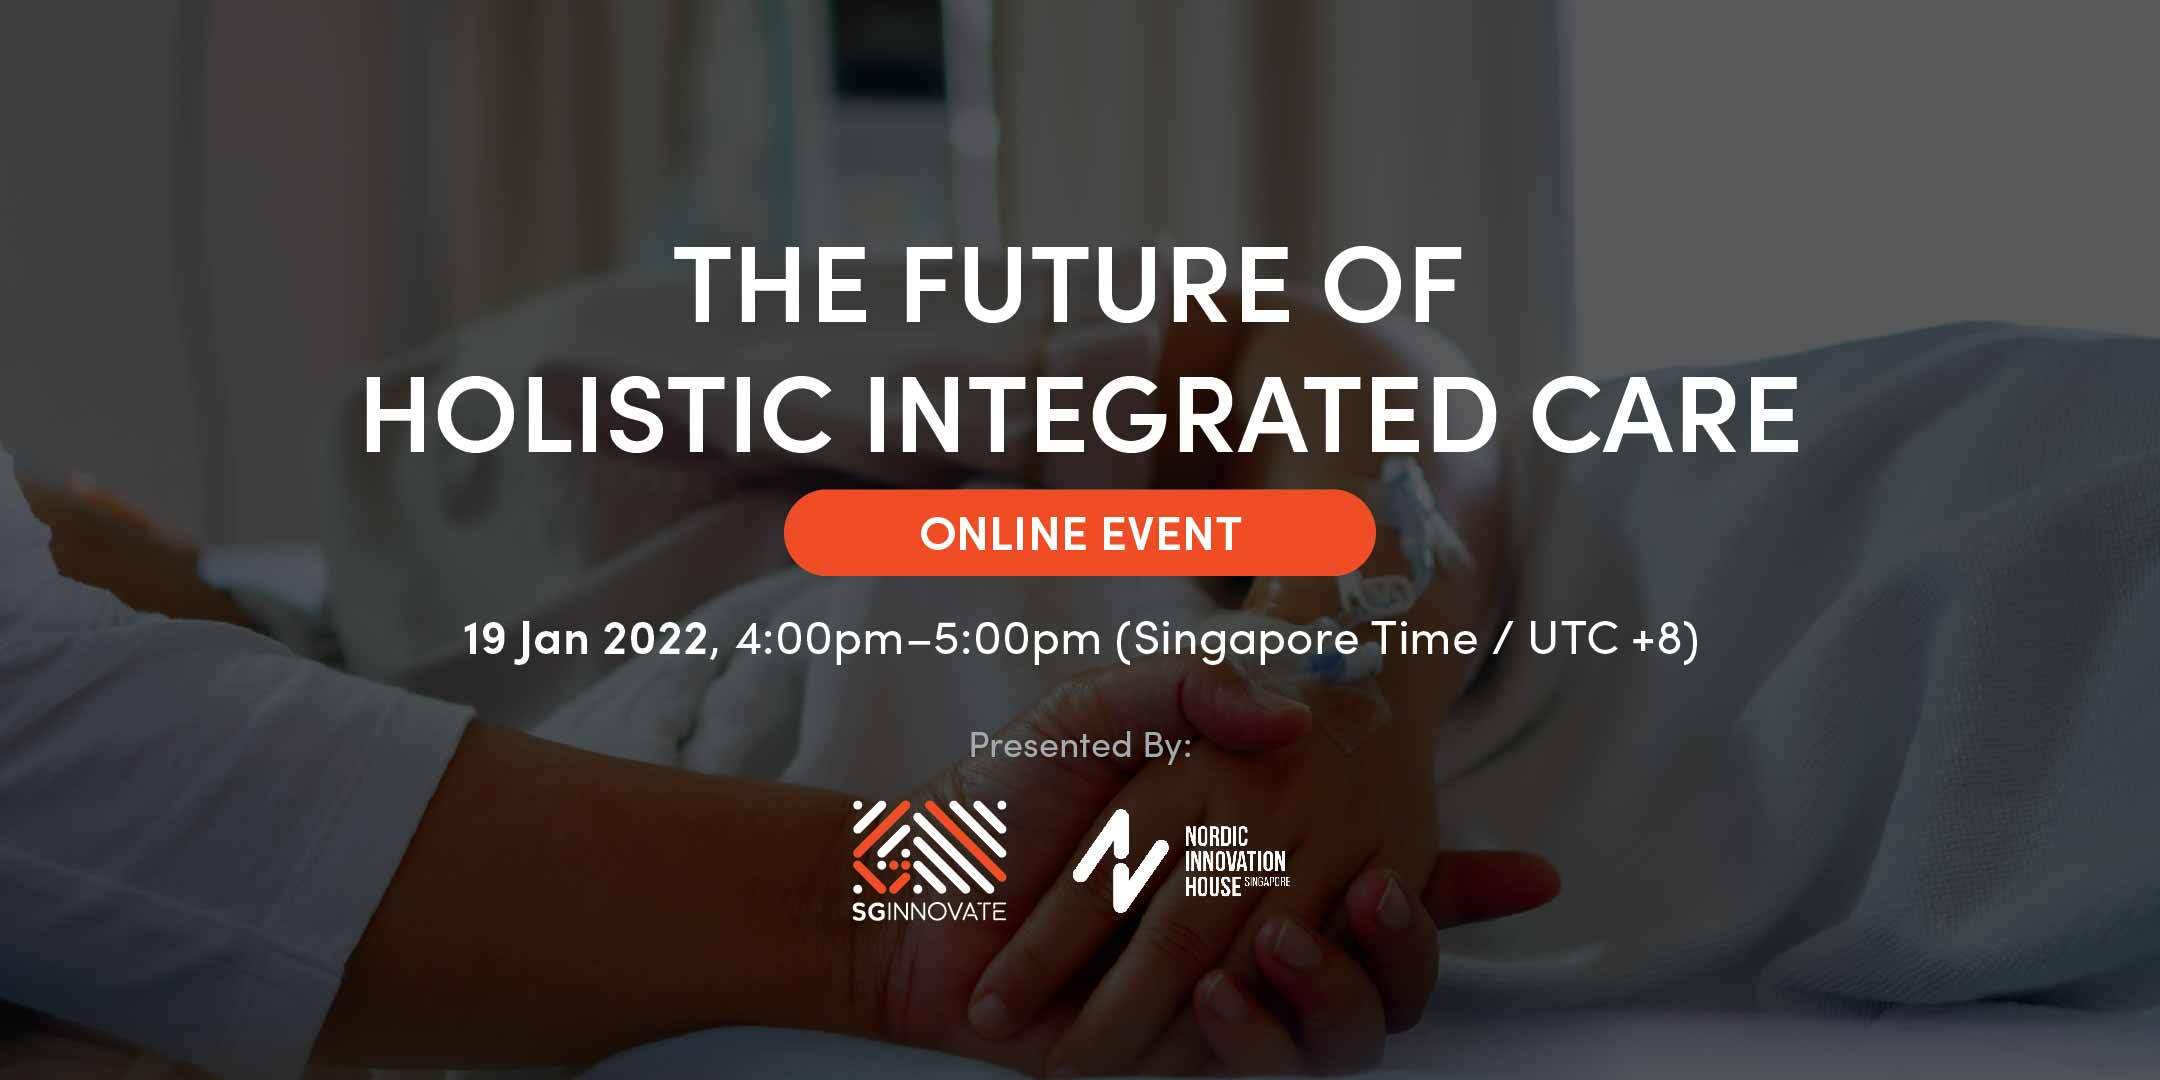 The Future of Holistic Integrated Care